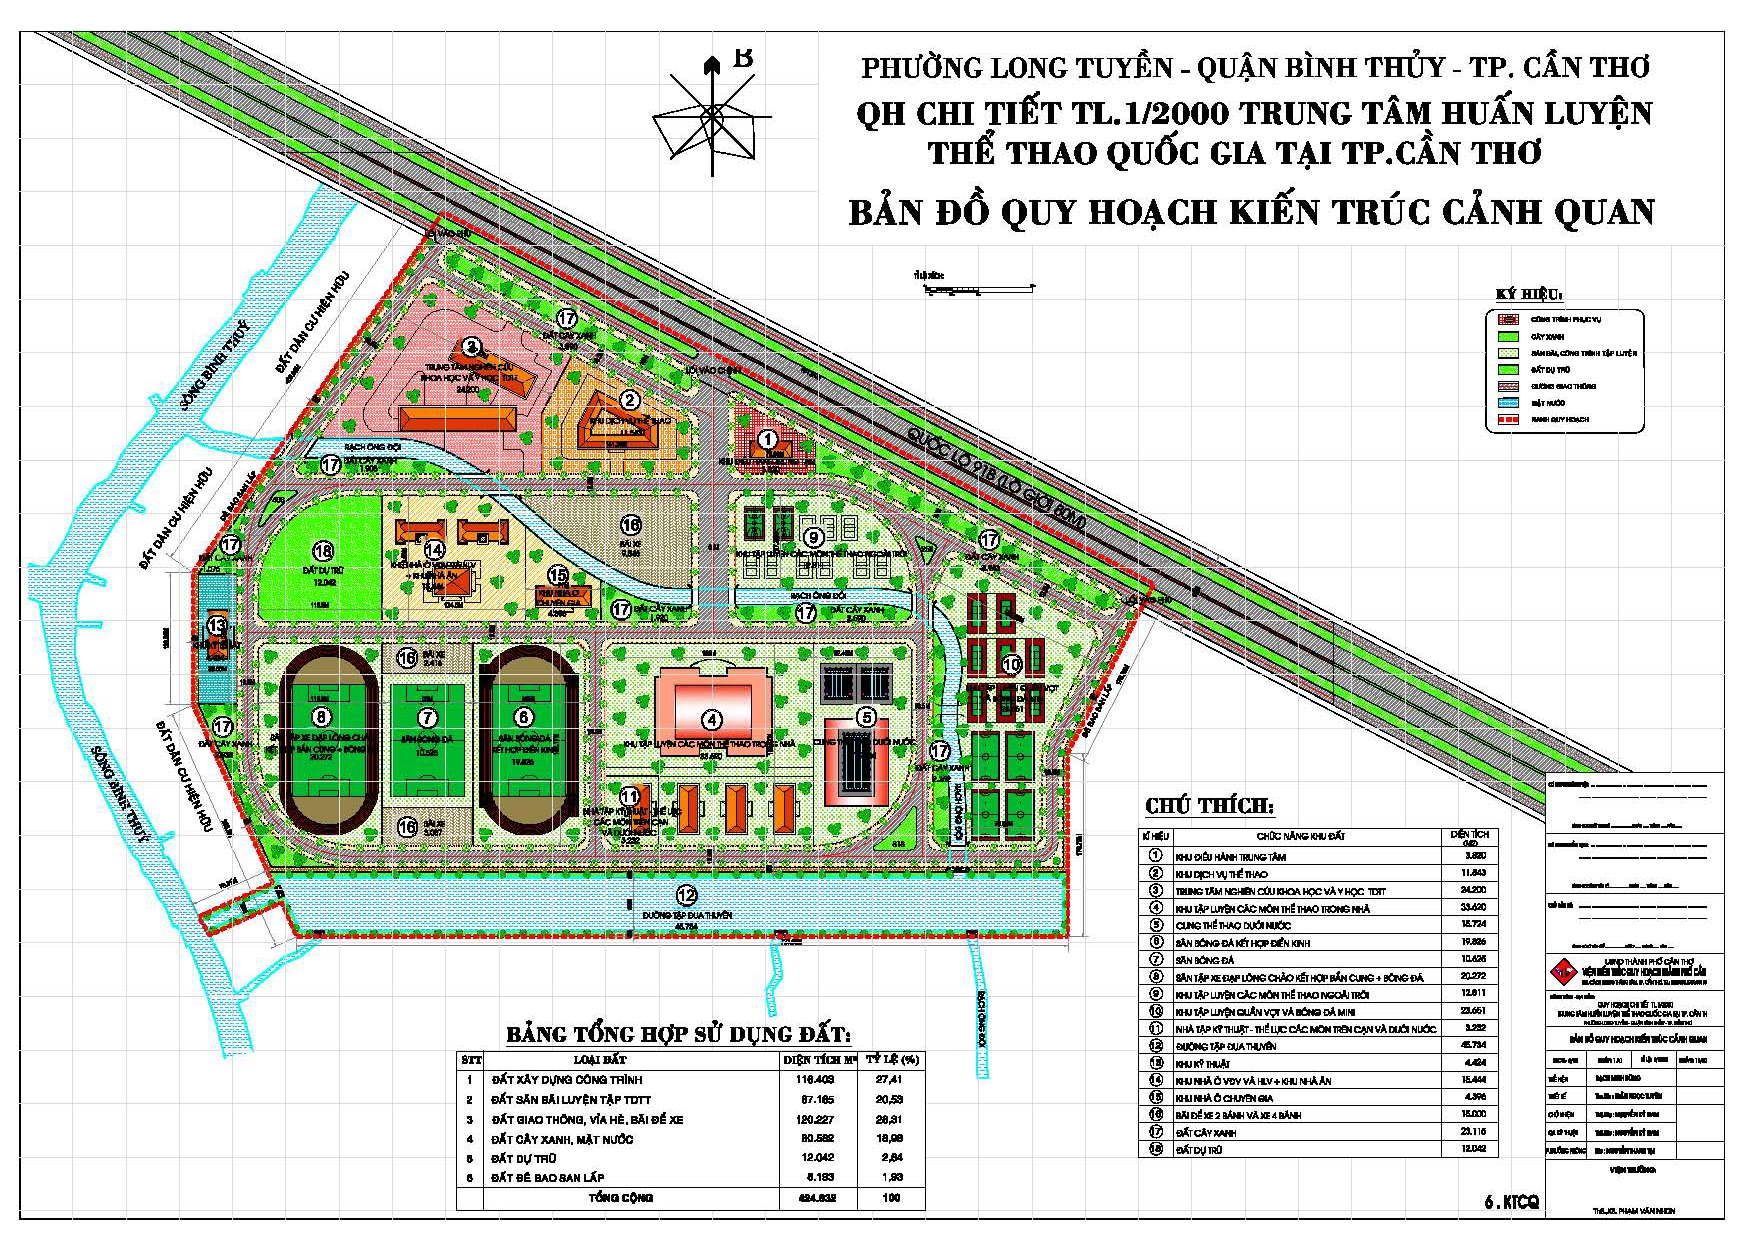 Bản đồ quy hoạch chi tiết xây dựng trung tâm huấn luyện thể thao quốc gia tại Cần Thơ tỷ lệ 1/2000 